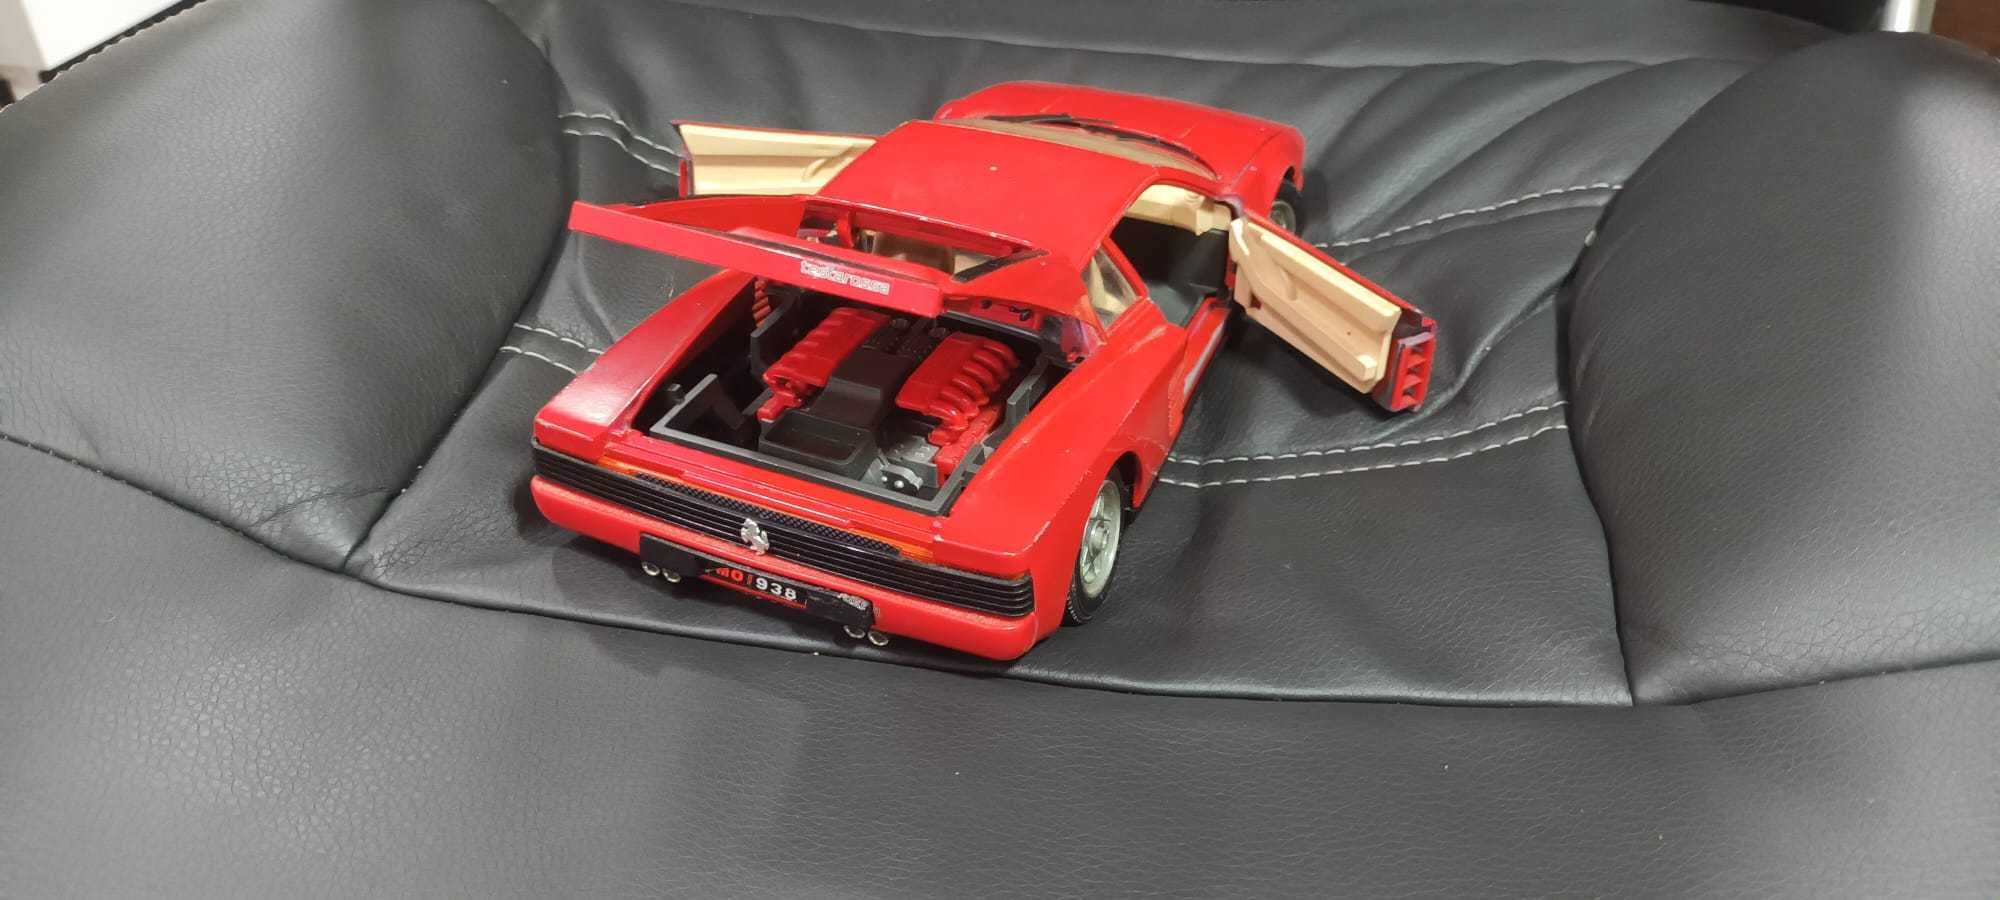 Macheta Ferrari Testarossa 1984 Burago 1:18 metal